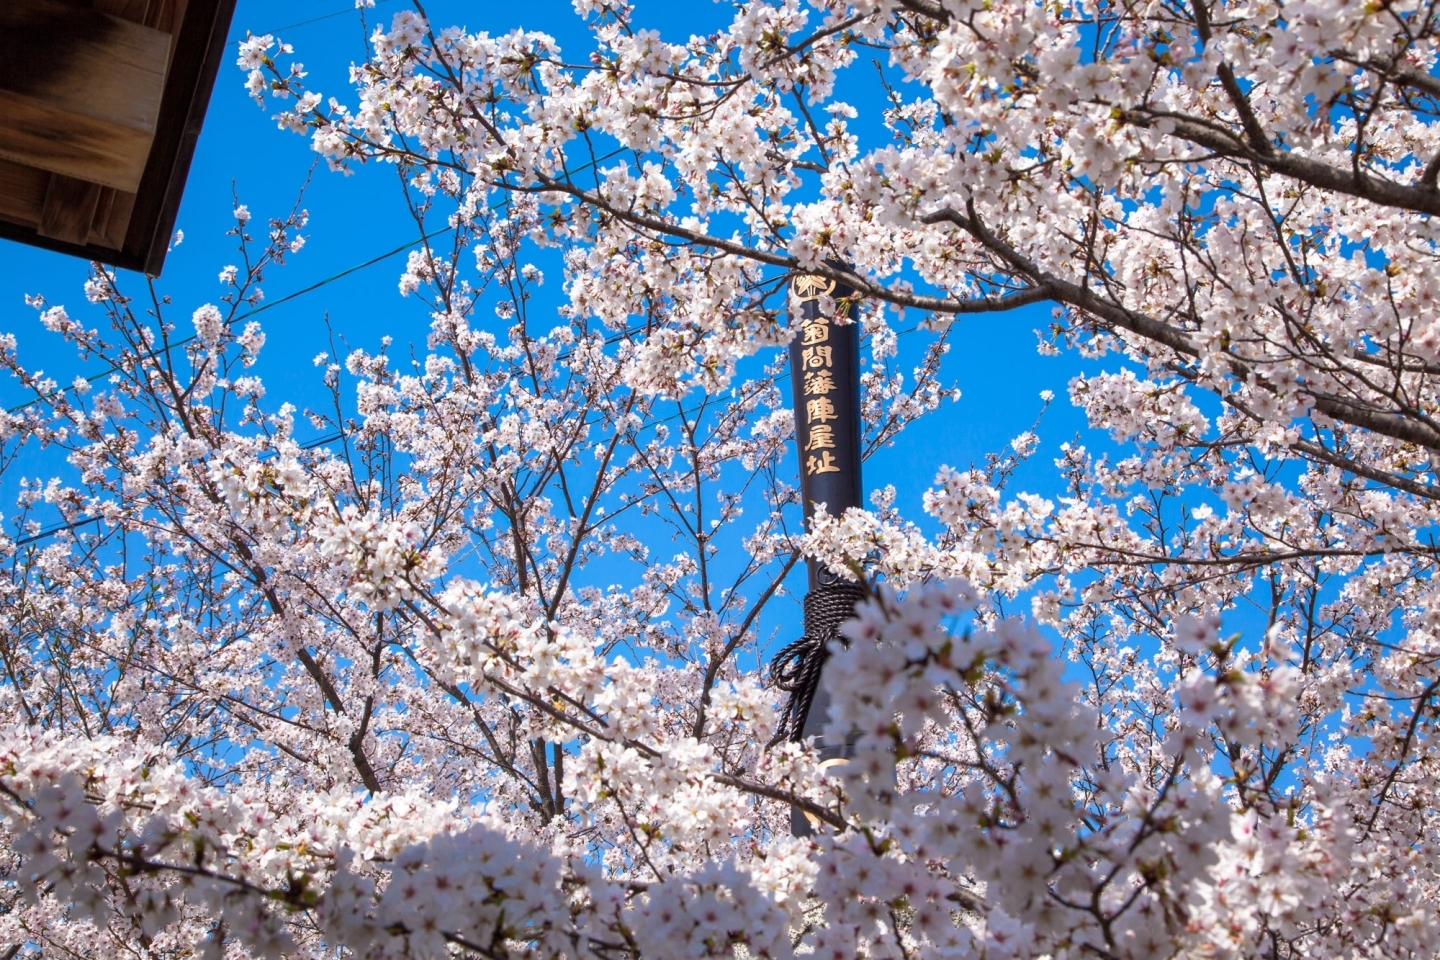 大浜陣屋広場の桜